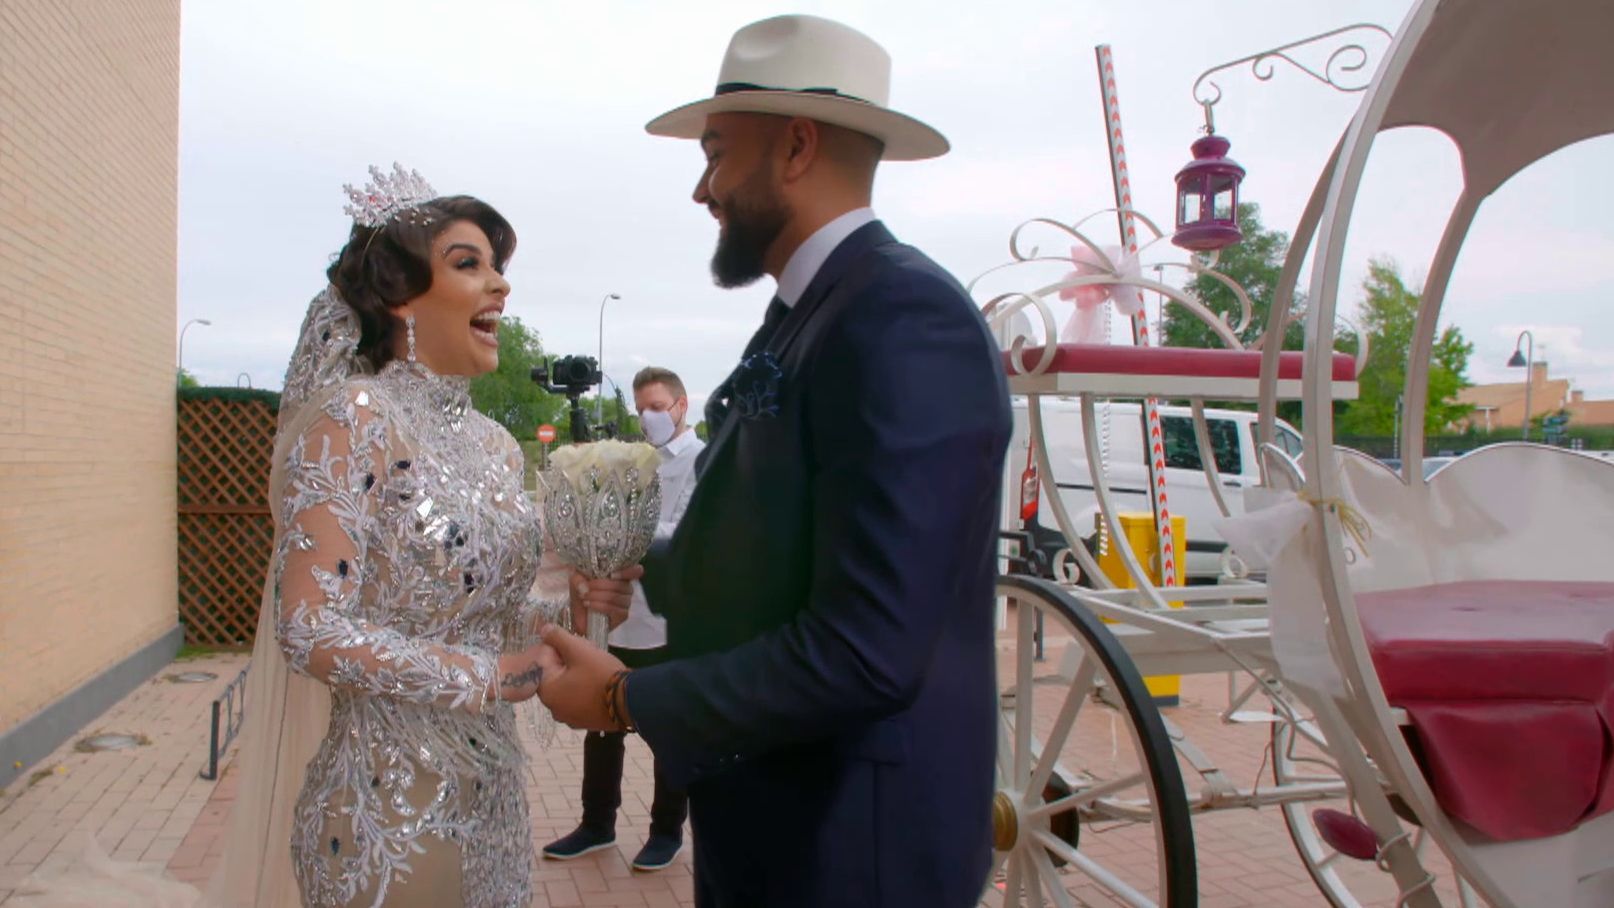 La inesperada sorpresa de Jose a la Rebe momentos antes de casarse: así ha sido su paseo en carroza